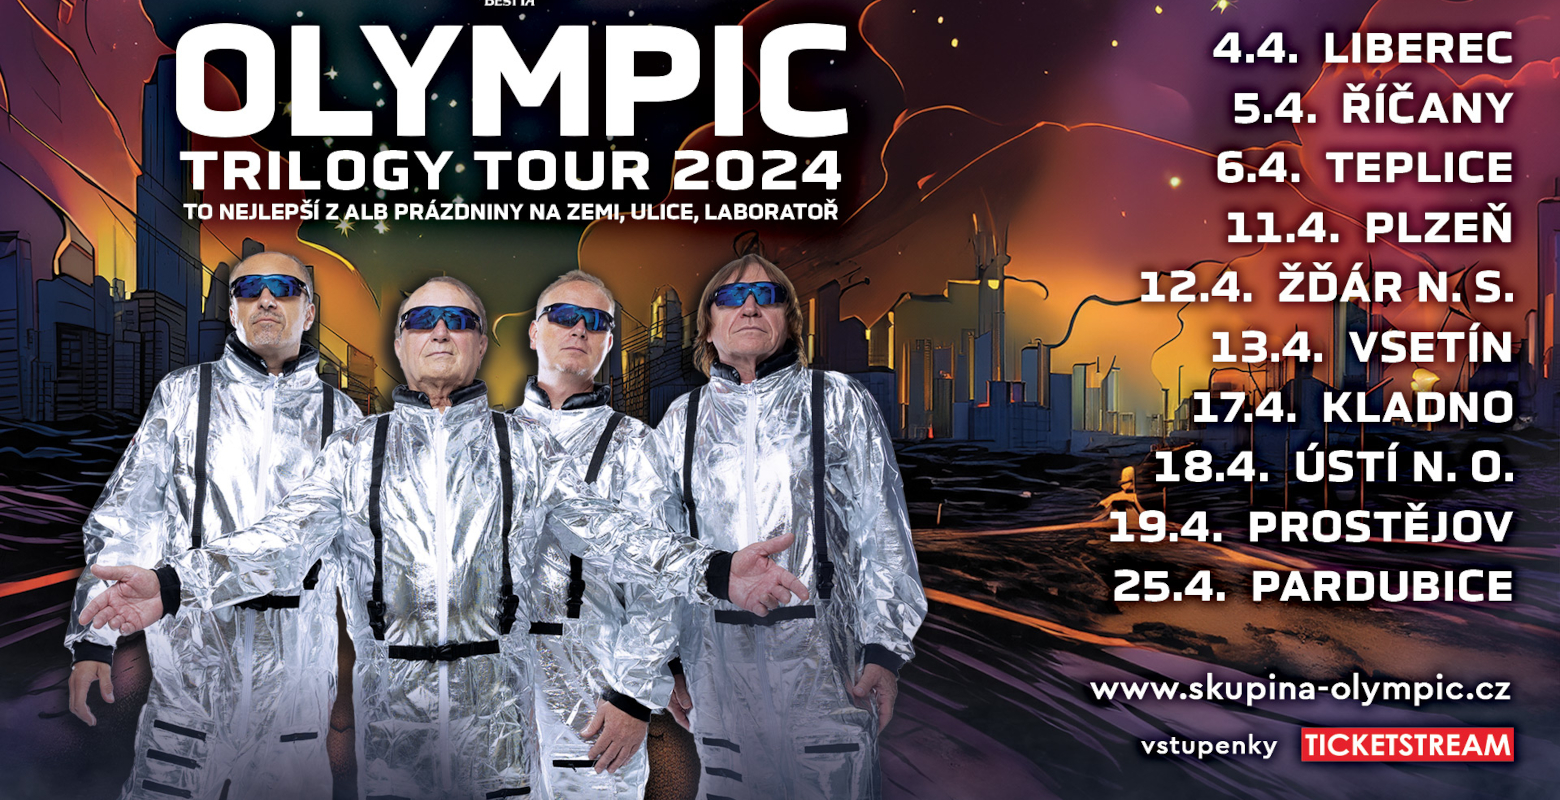 Olympic, Trilogy Tour 2024, DK Liberec, Liberec Vstupenky Ticketstream